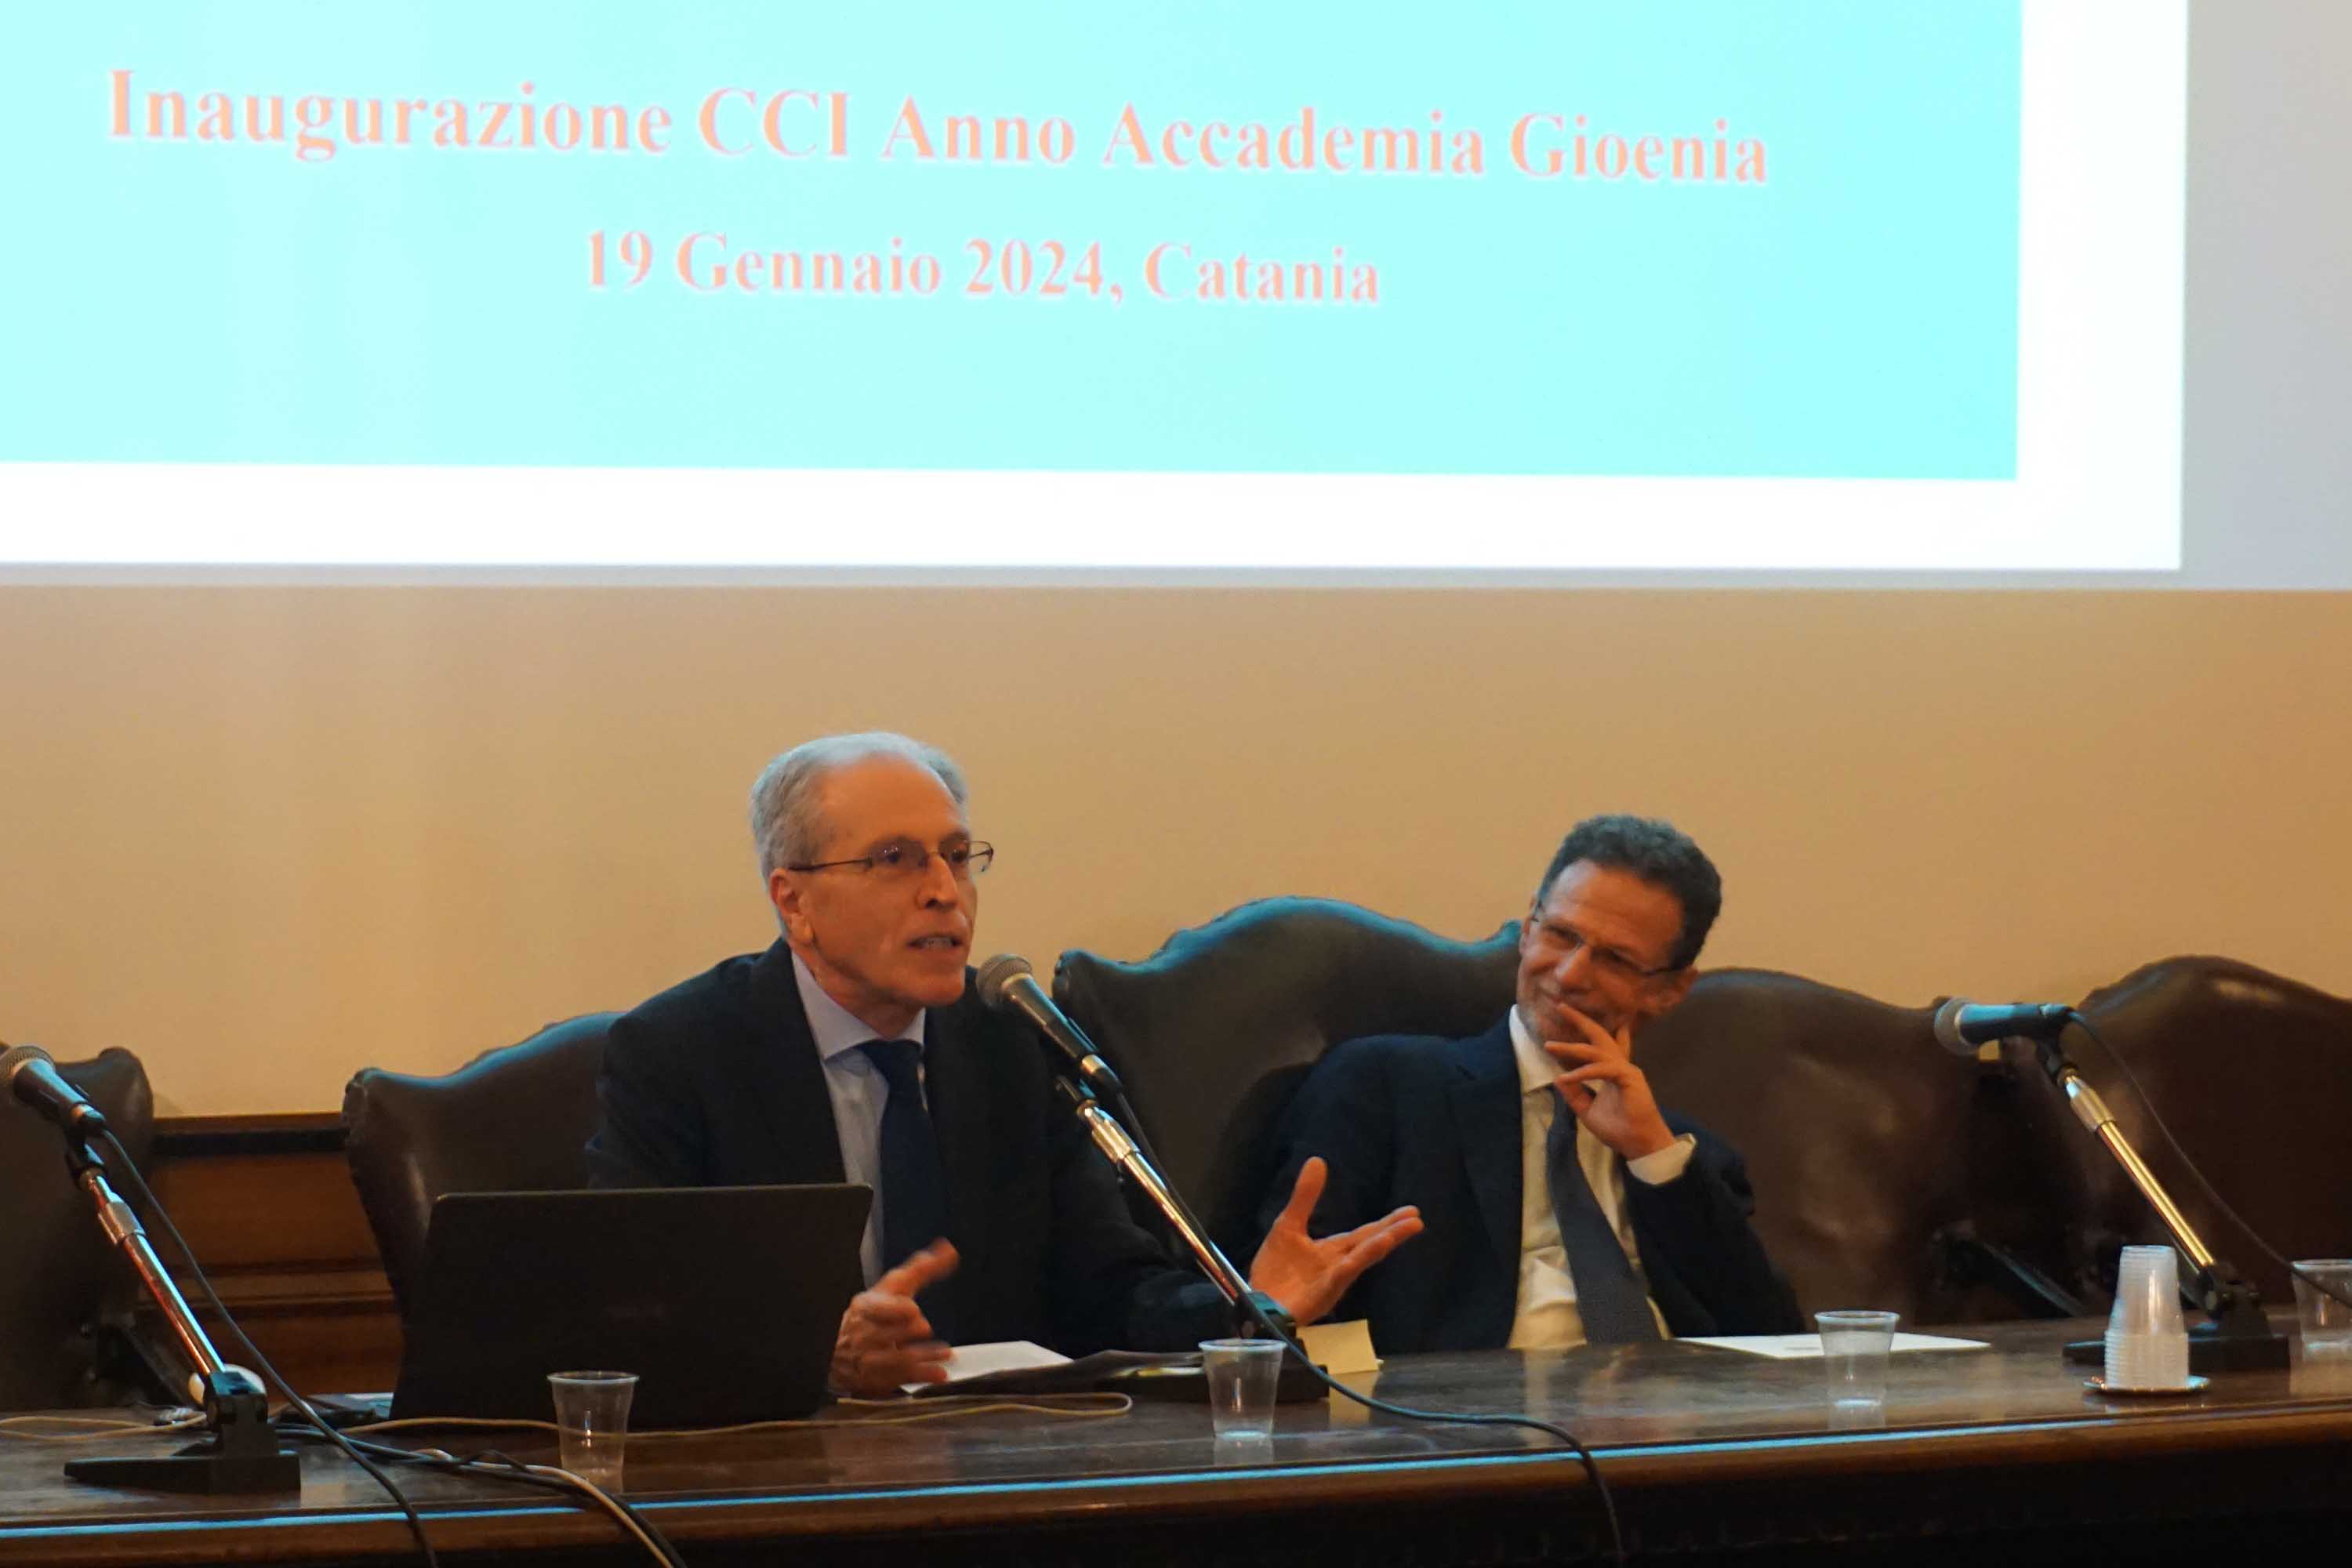 Il presidente dell'Accademia Gioenia, Daniele Condorelli, e il rettore Francesco Priolo